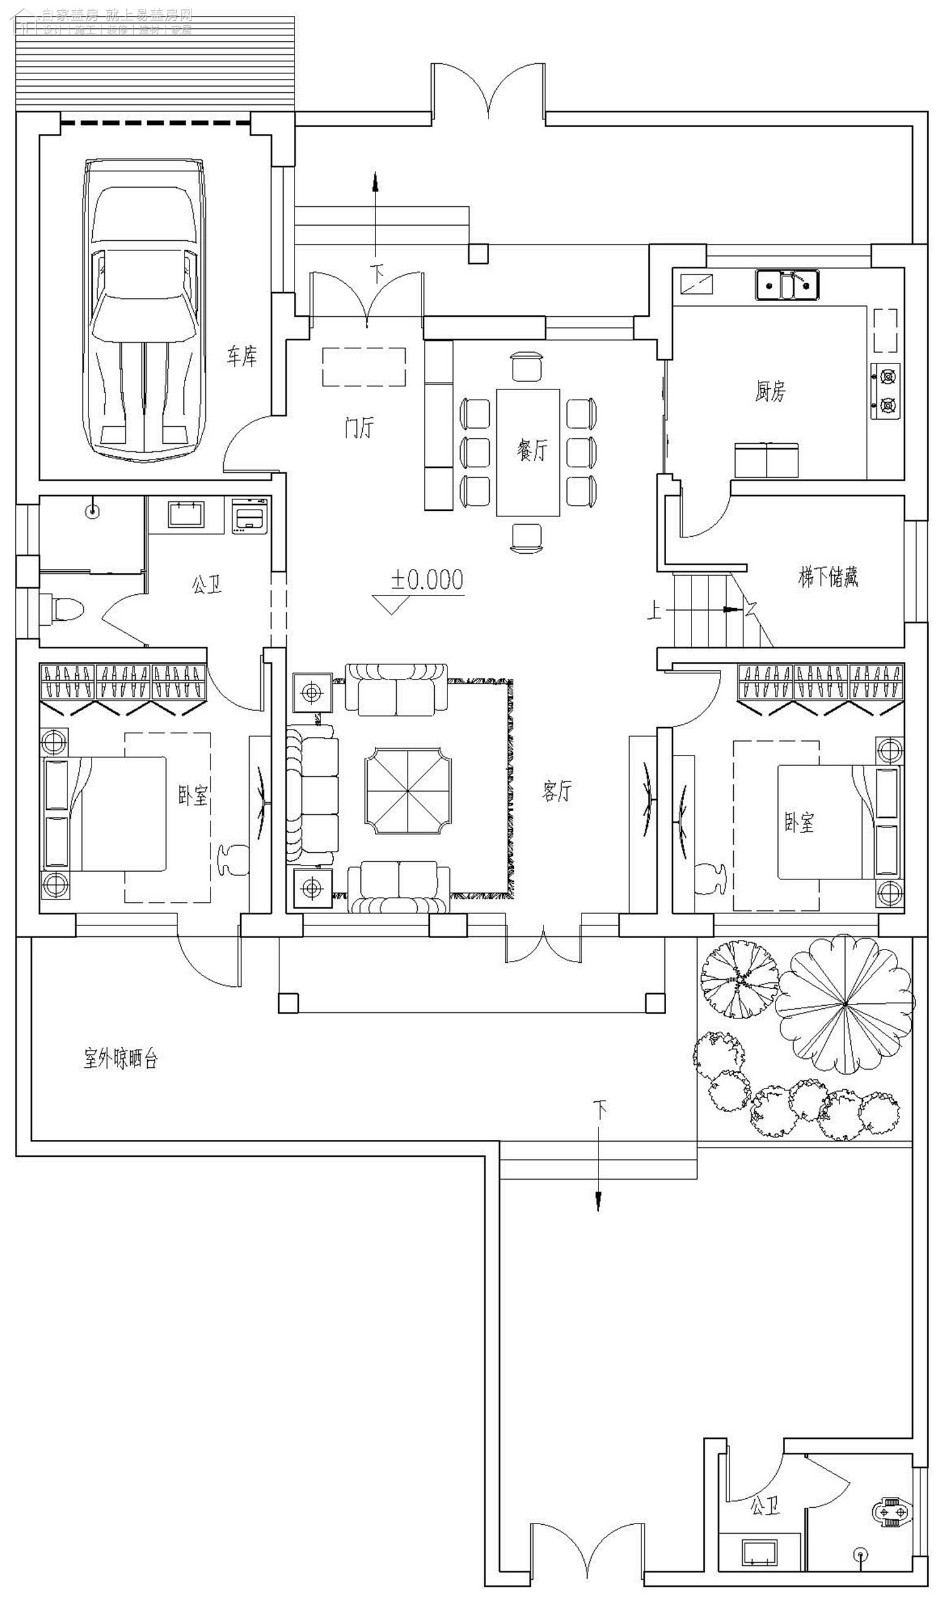 占地14x13二层带庭院露台自建别墅设计全套施工图 